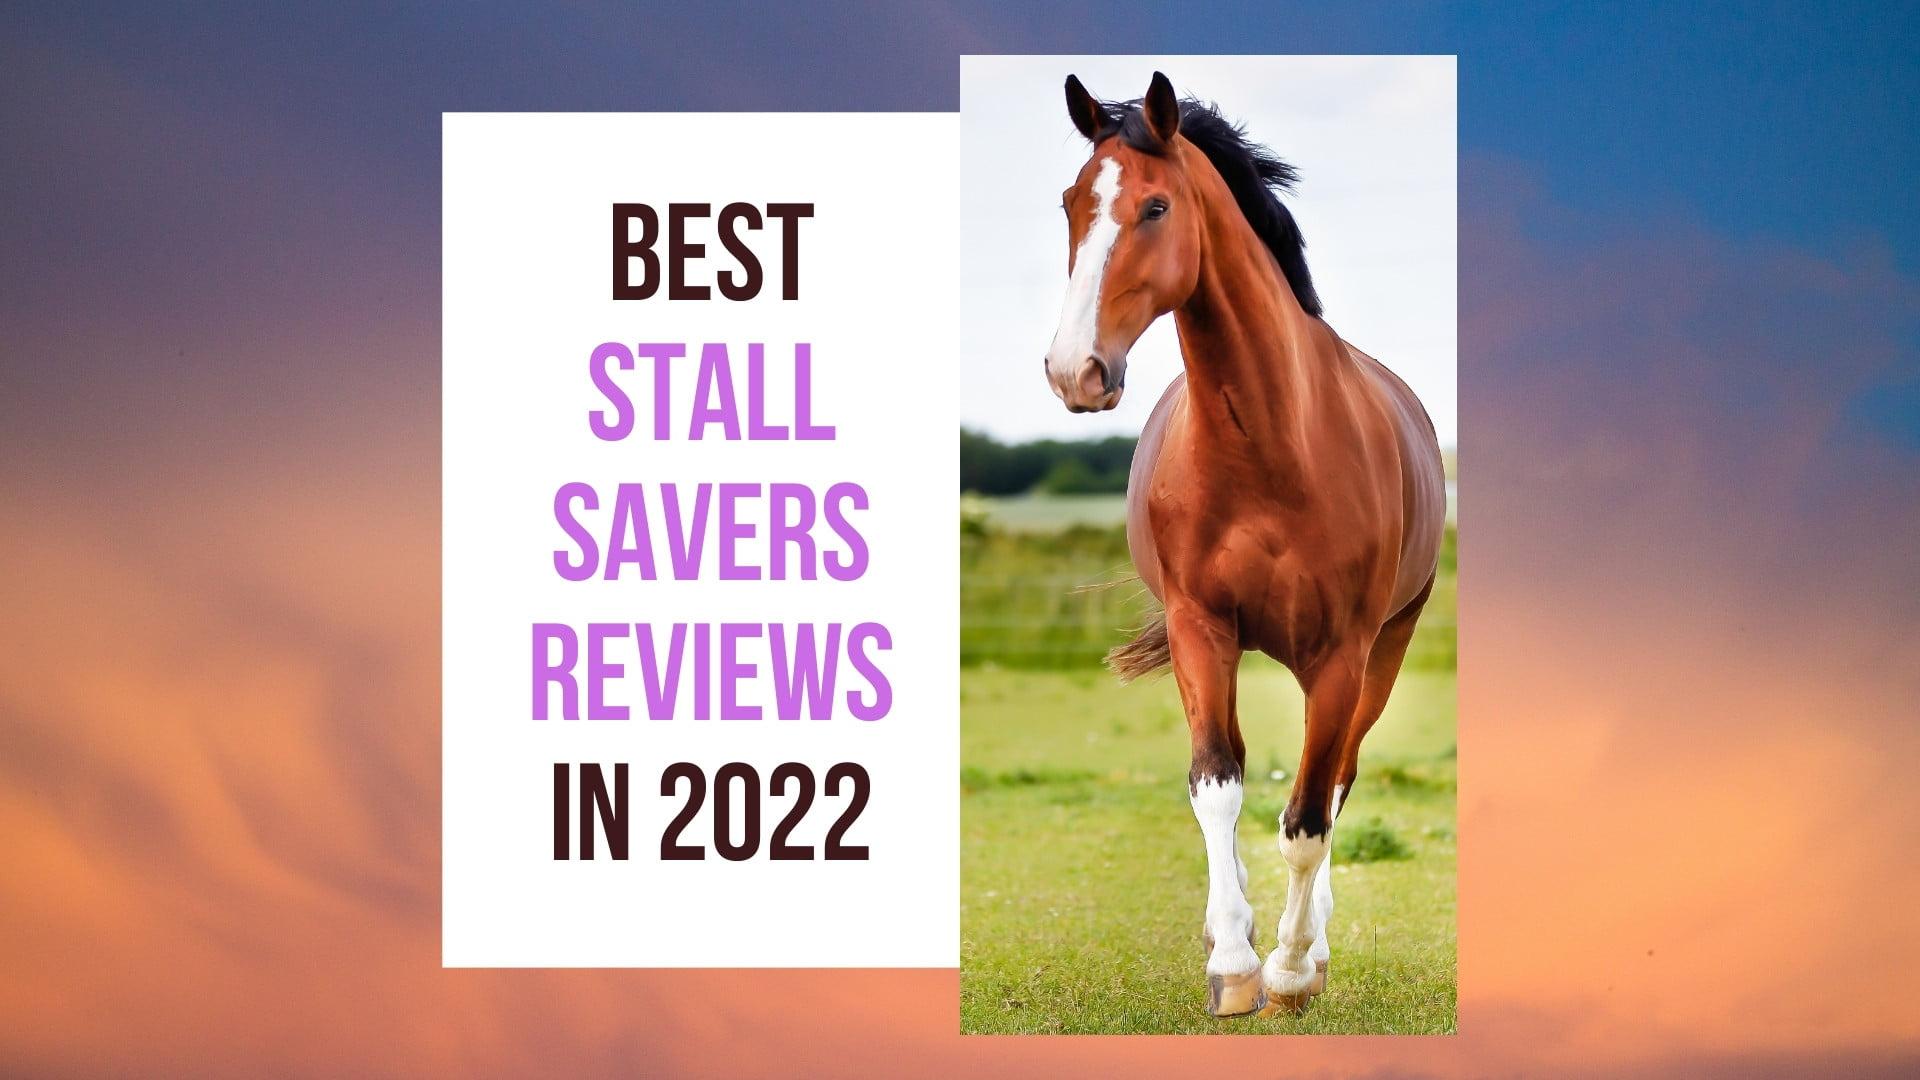 Stall Savers Reviews